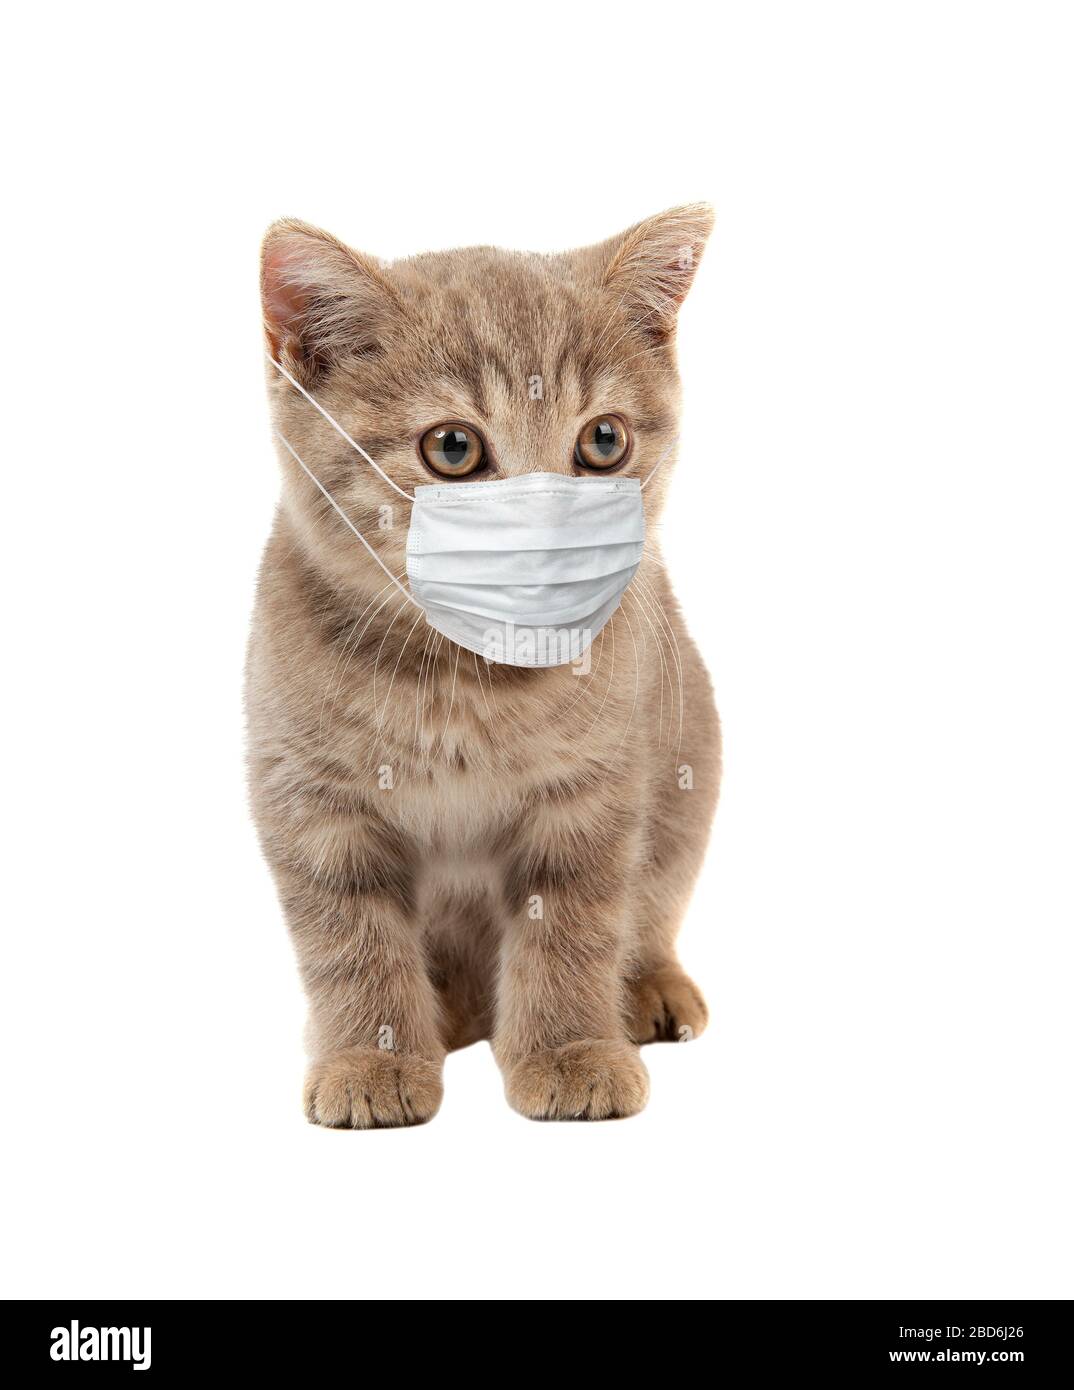 gattino in maschera medica, su sfondo bianco, isolato. Concetto covid-19 coronavirus pandemico Foto Stock